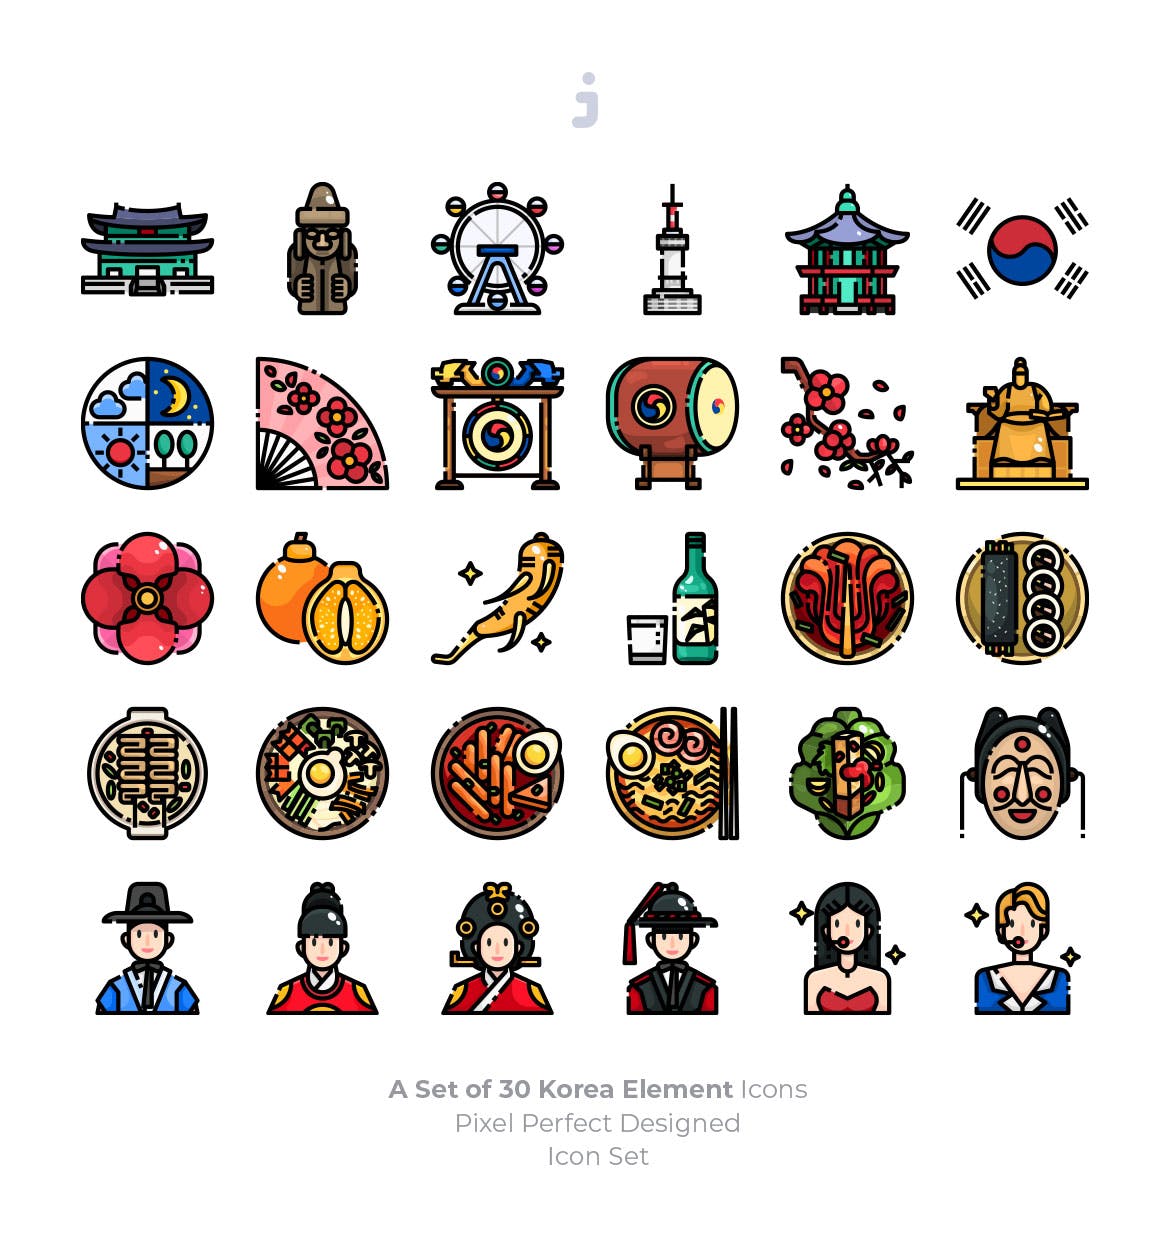 30个韩国元素描边风图标源文件下载30 Korea Element Icons插图1